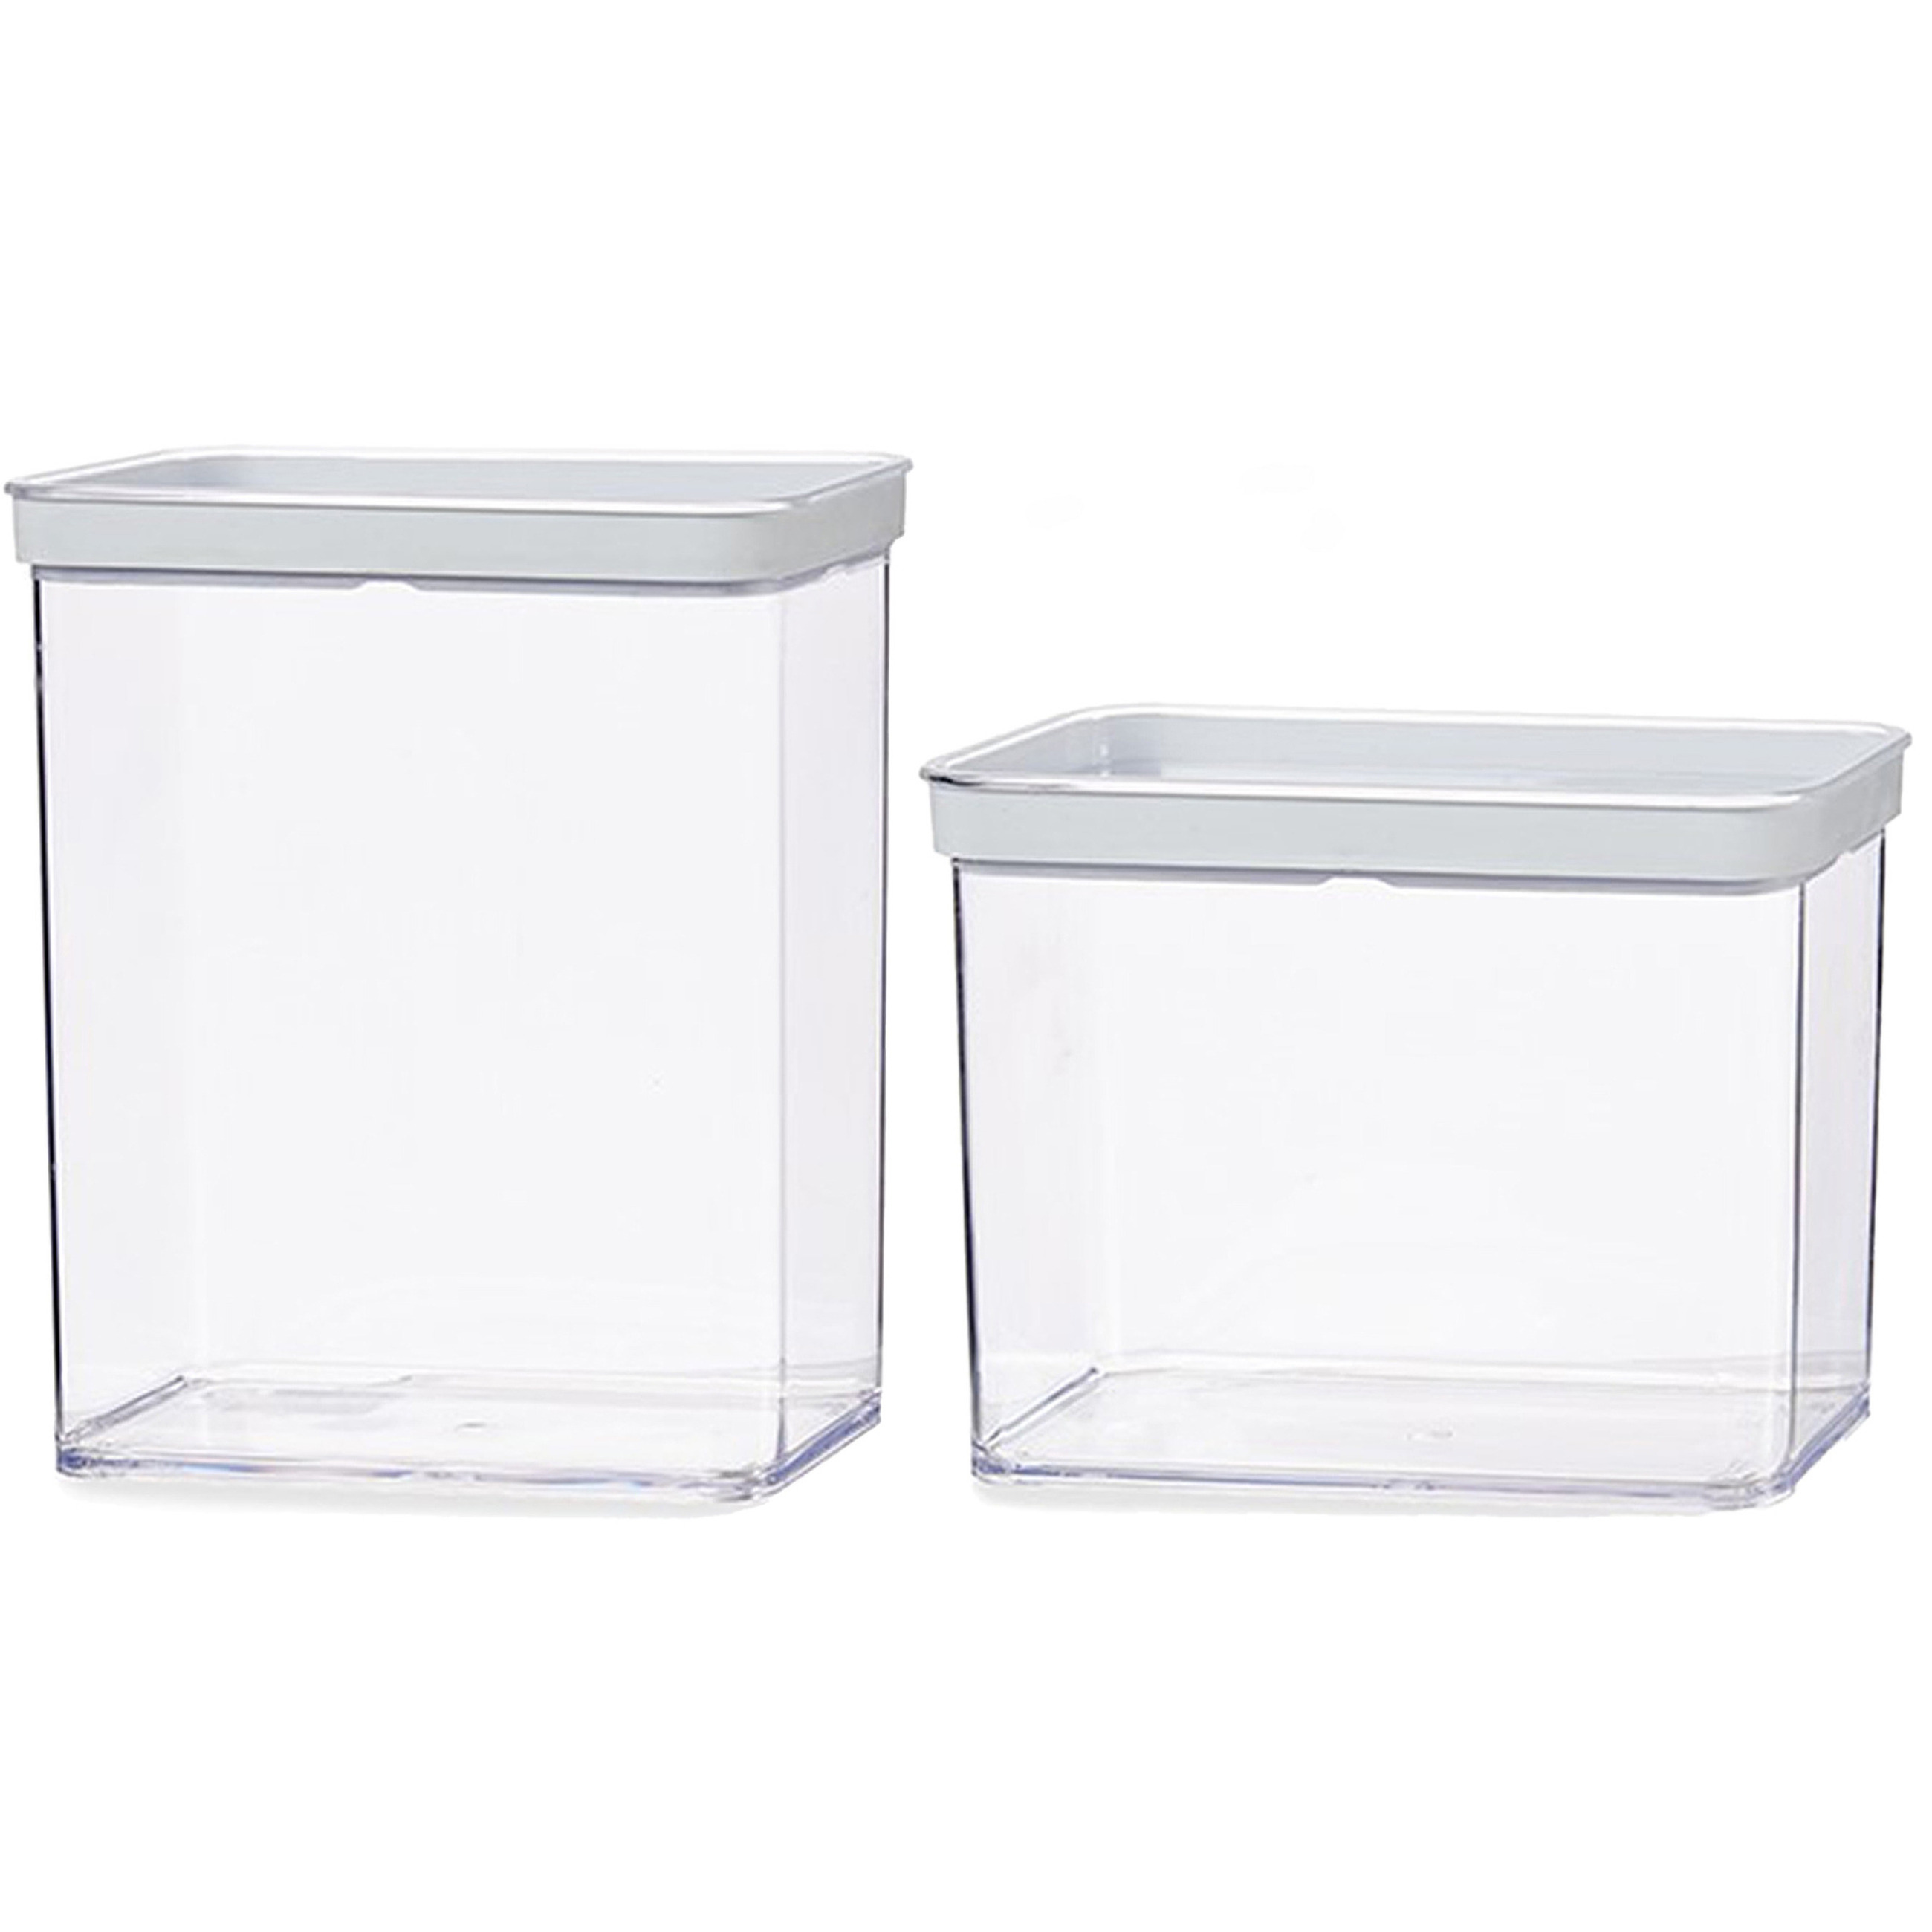 Gondol Plastics 6x stuks keuken voorraad potten/bakjes set met deksel 2.2 en 3.3 liter -